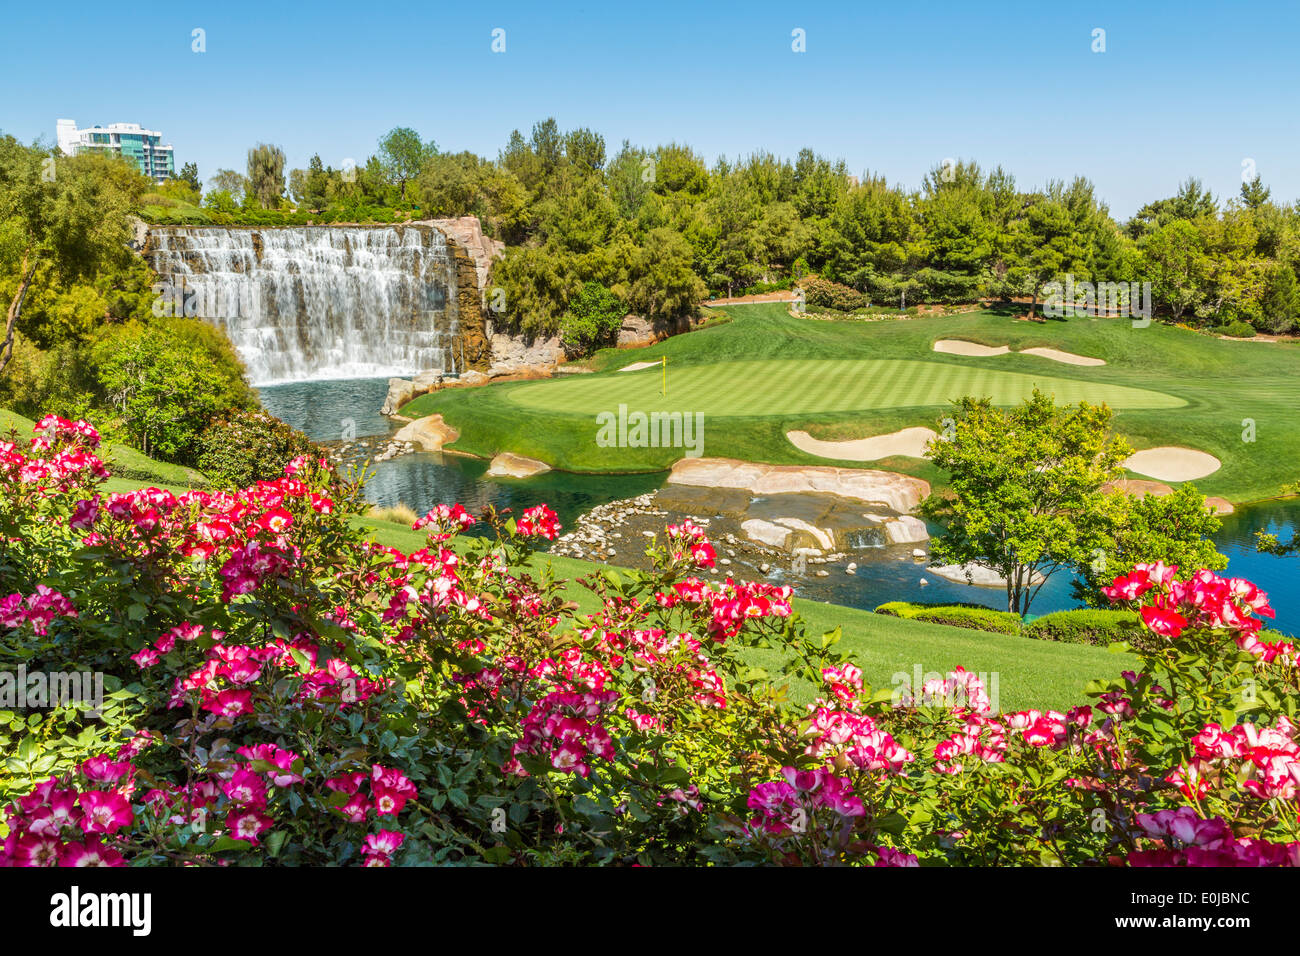 Il Wynn Las Vegas Golf Course ha chiuso il 17 2017 dicembre per creare il Wynn Paradise Park, un progetto di sviluppo da 1,5 miliardi di dollari a Las Vegas Nevada USA Foto Stock